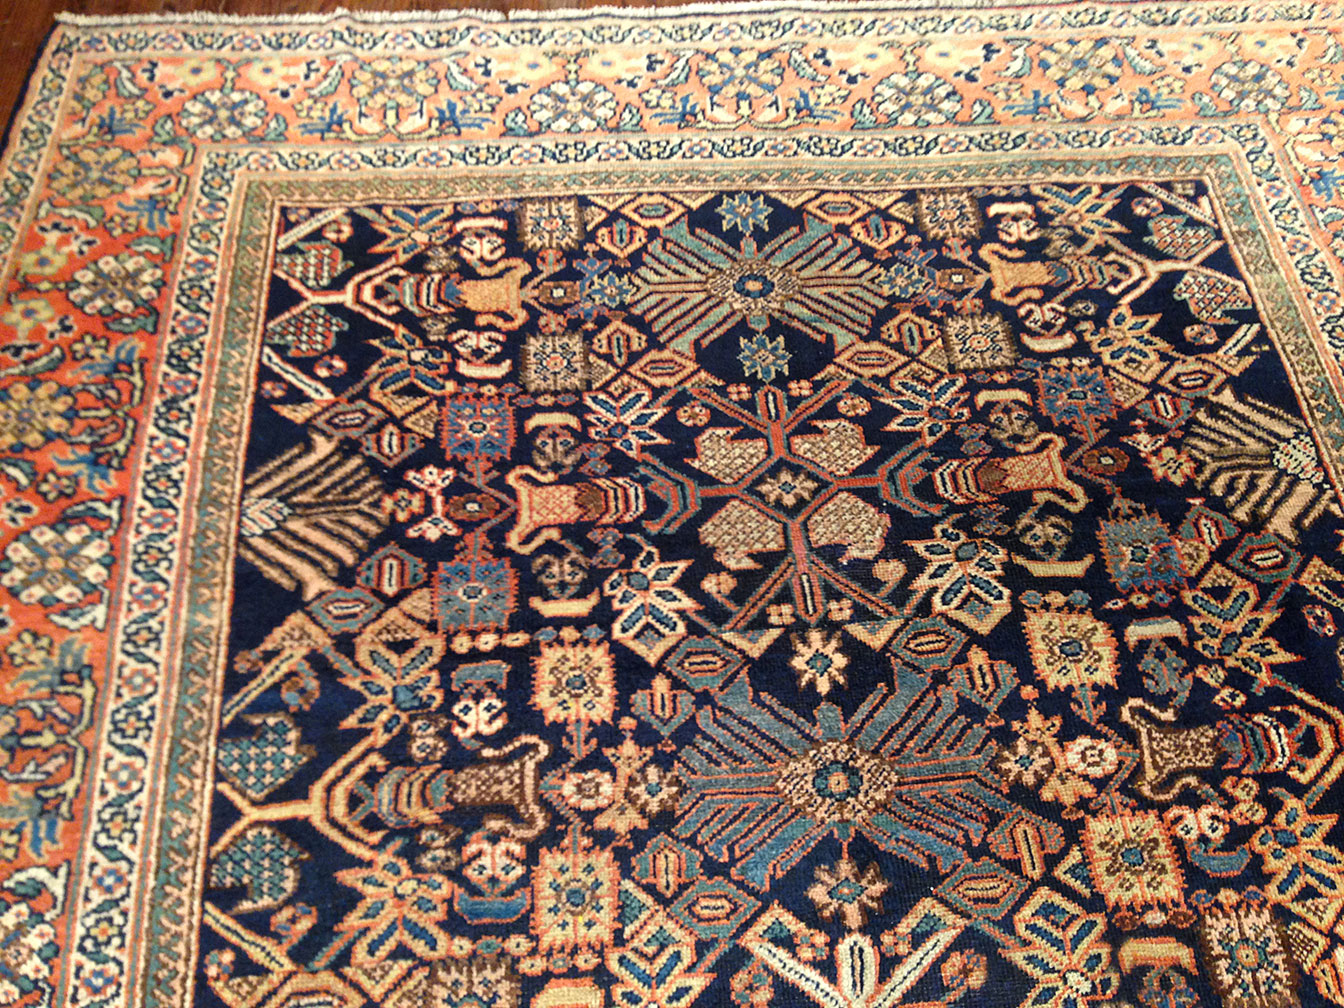 Antique mahal Carpet - # 50026